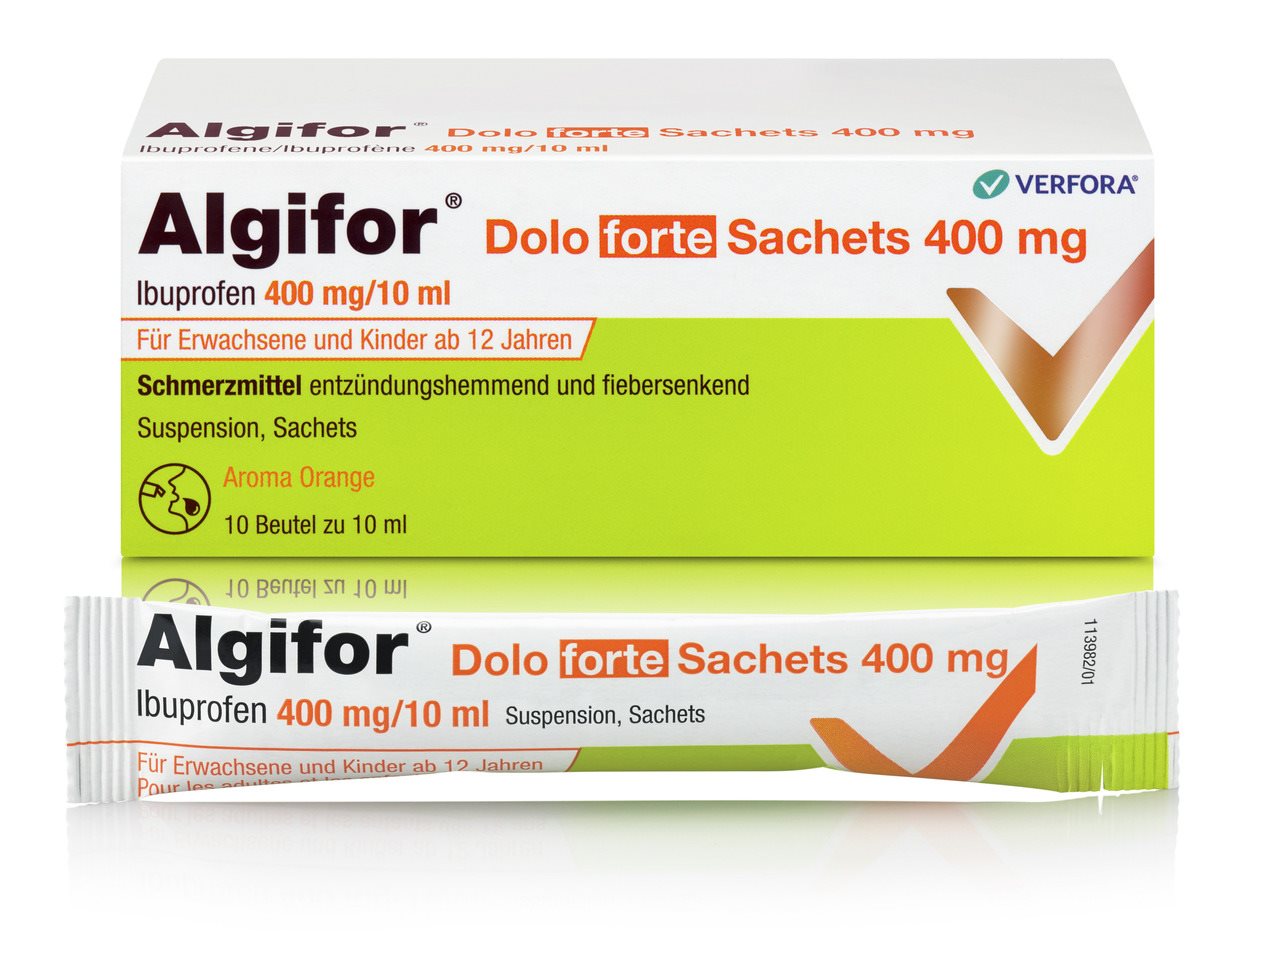 ALGIFOR Dolo forte Susp 400 mg/10ml 10 Btl 10 ml